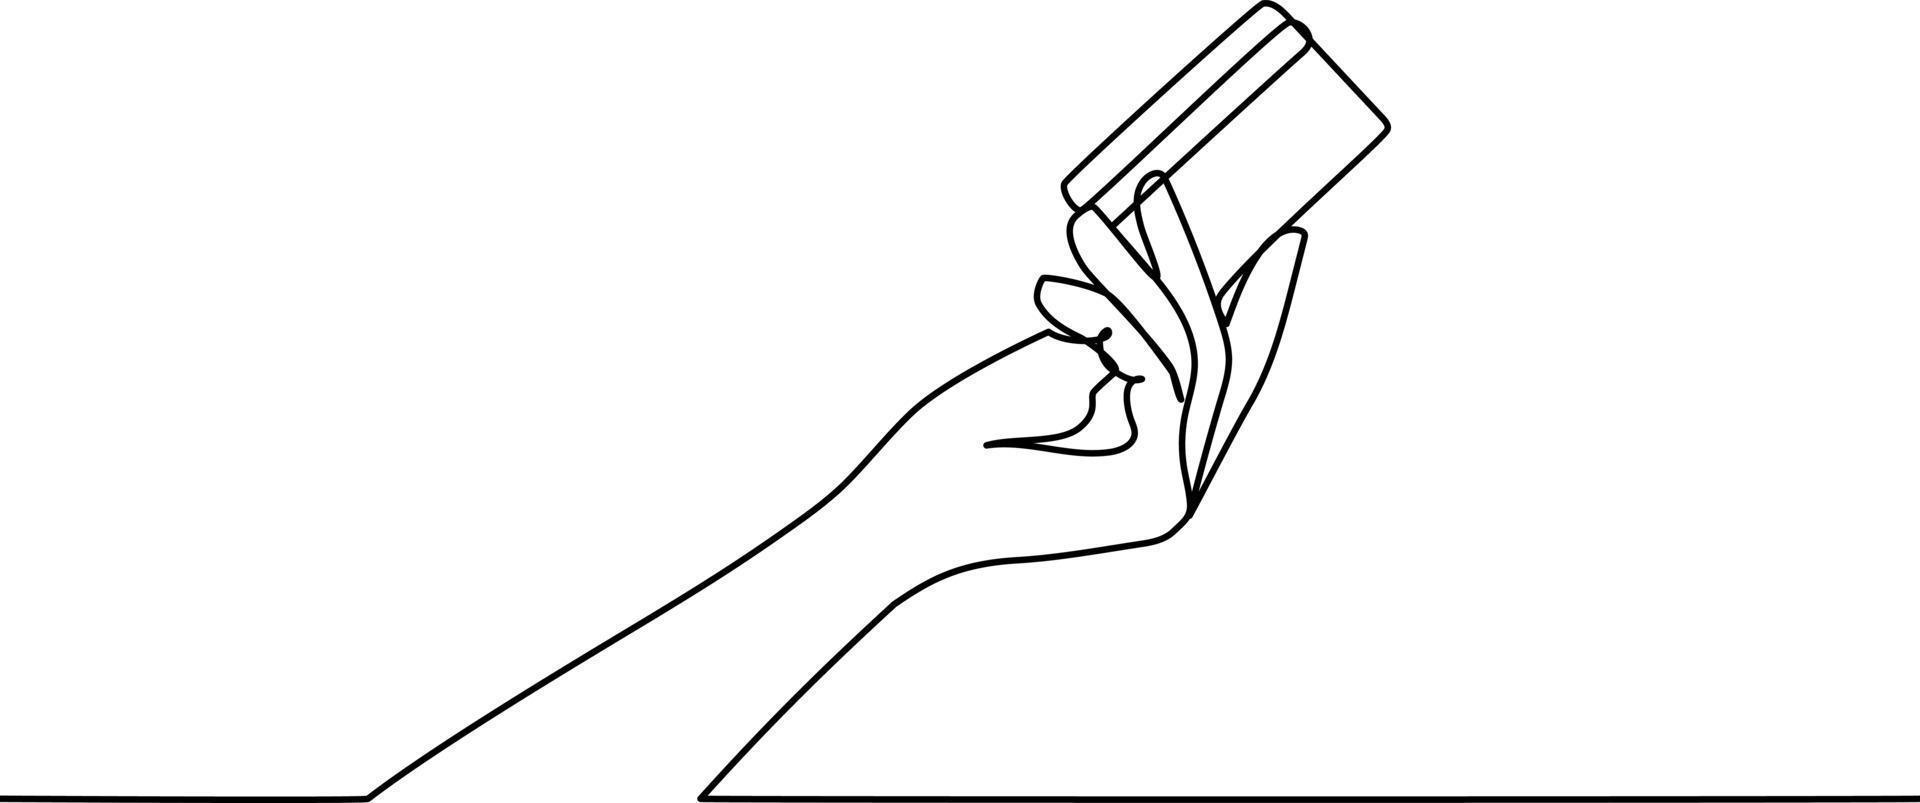 hand- Holding credit kaart doorlopend lijn tekening vector